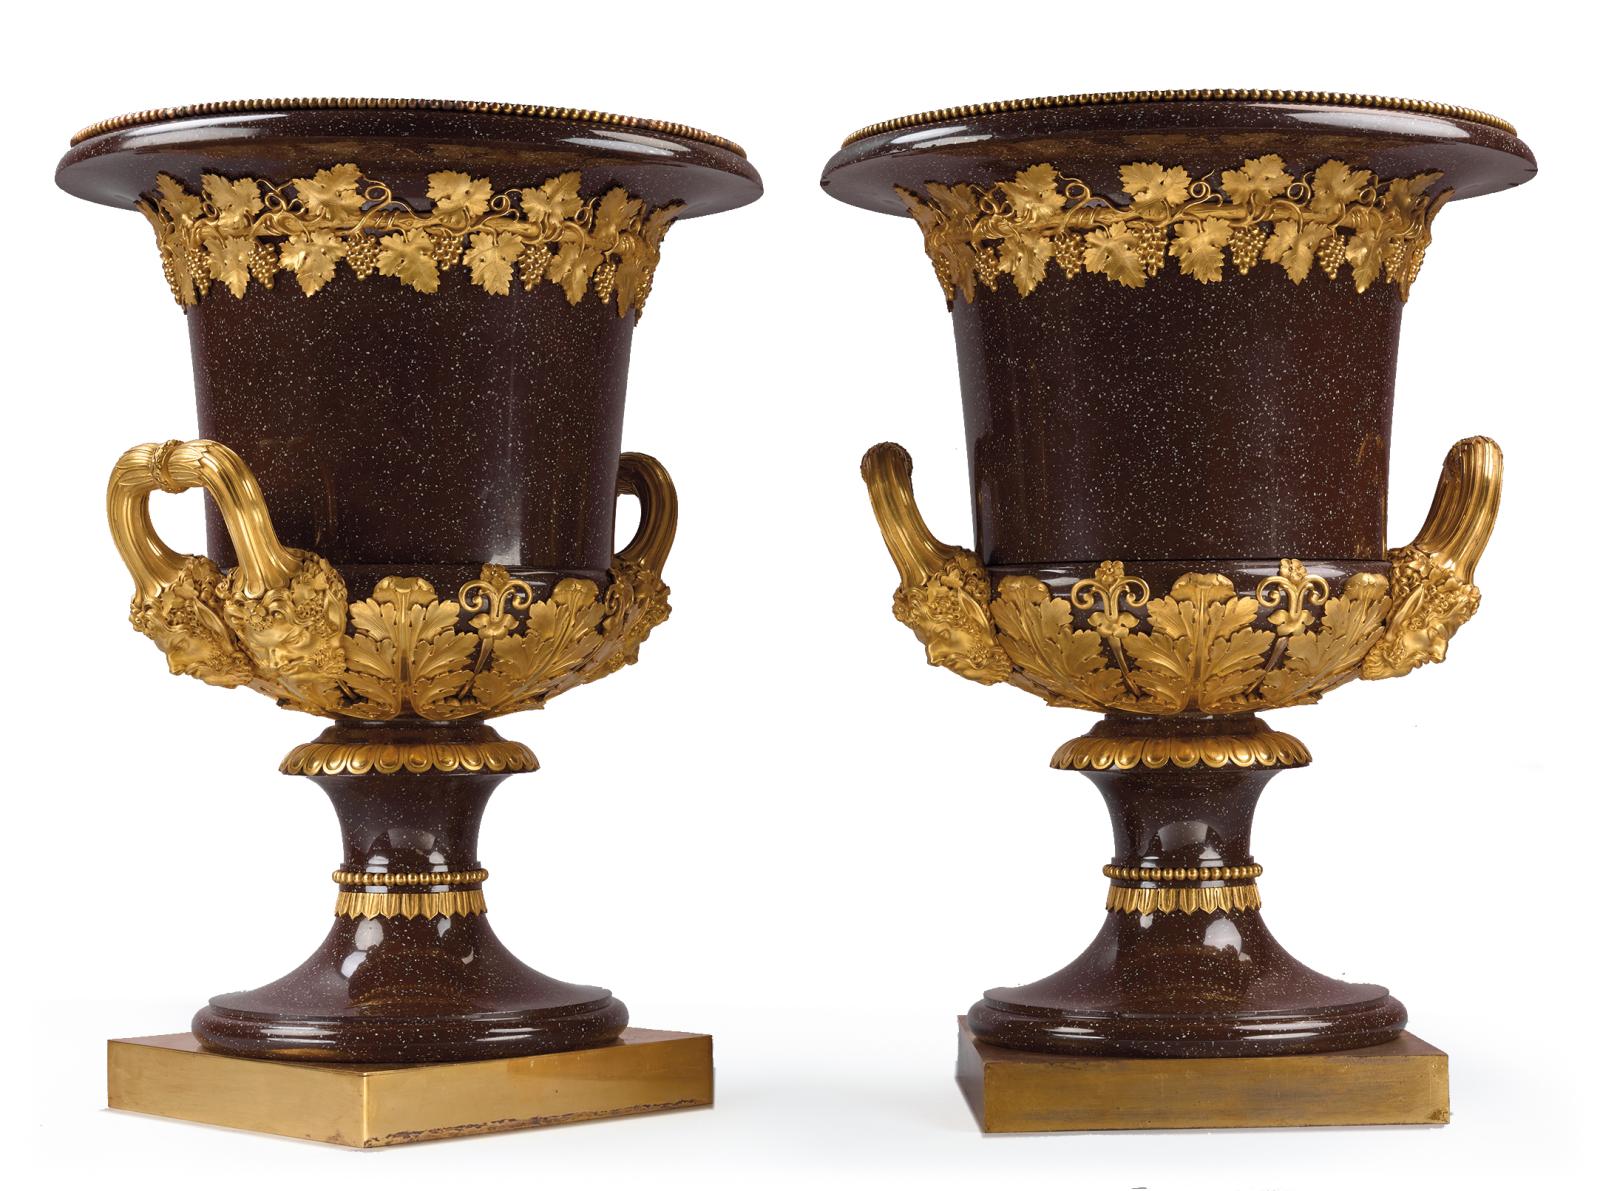 Manufacture Fabry et Utzschneider, paire de vases «Médicis», poterie fine de Sarreguemines, commande de 1810 pour le Garde-Meuble impérial